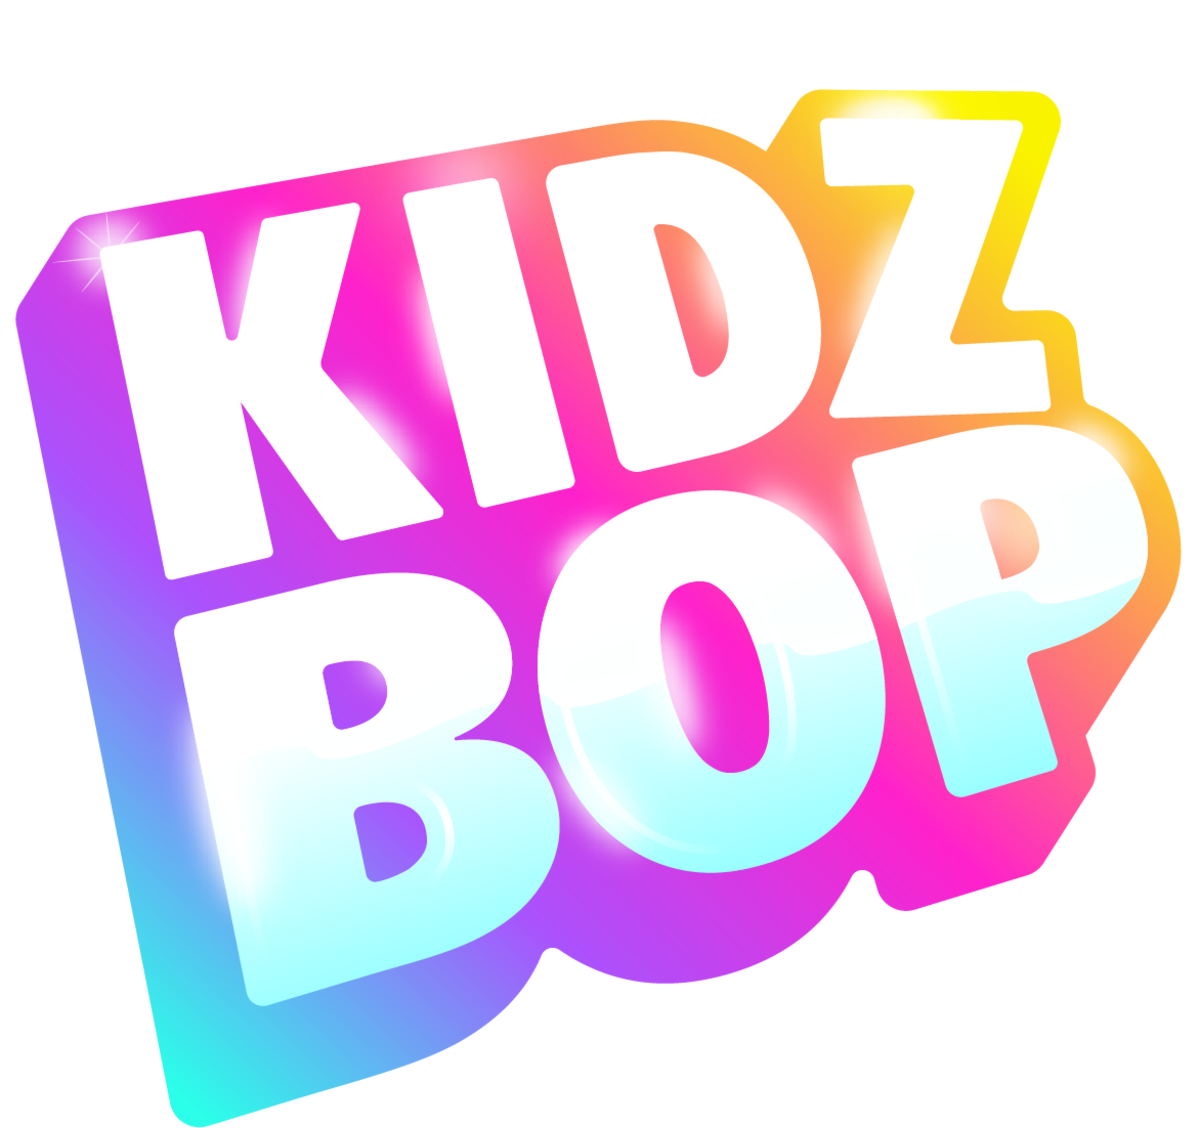 Kidz Bop Kids - Kidz Bop Christmas! [2012]